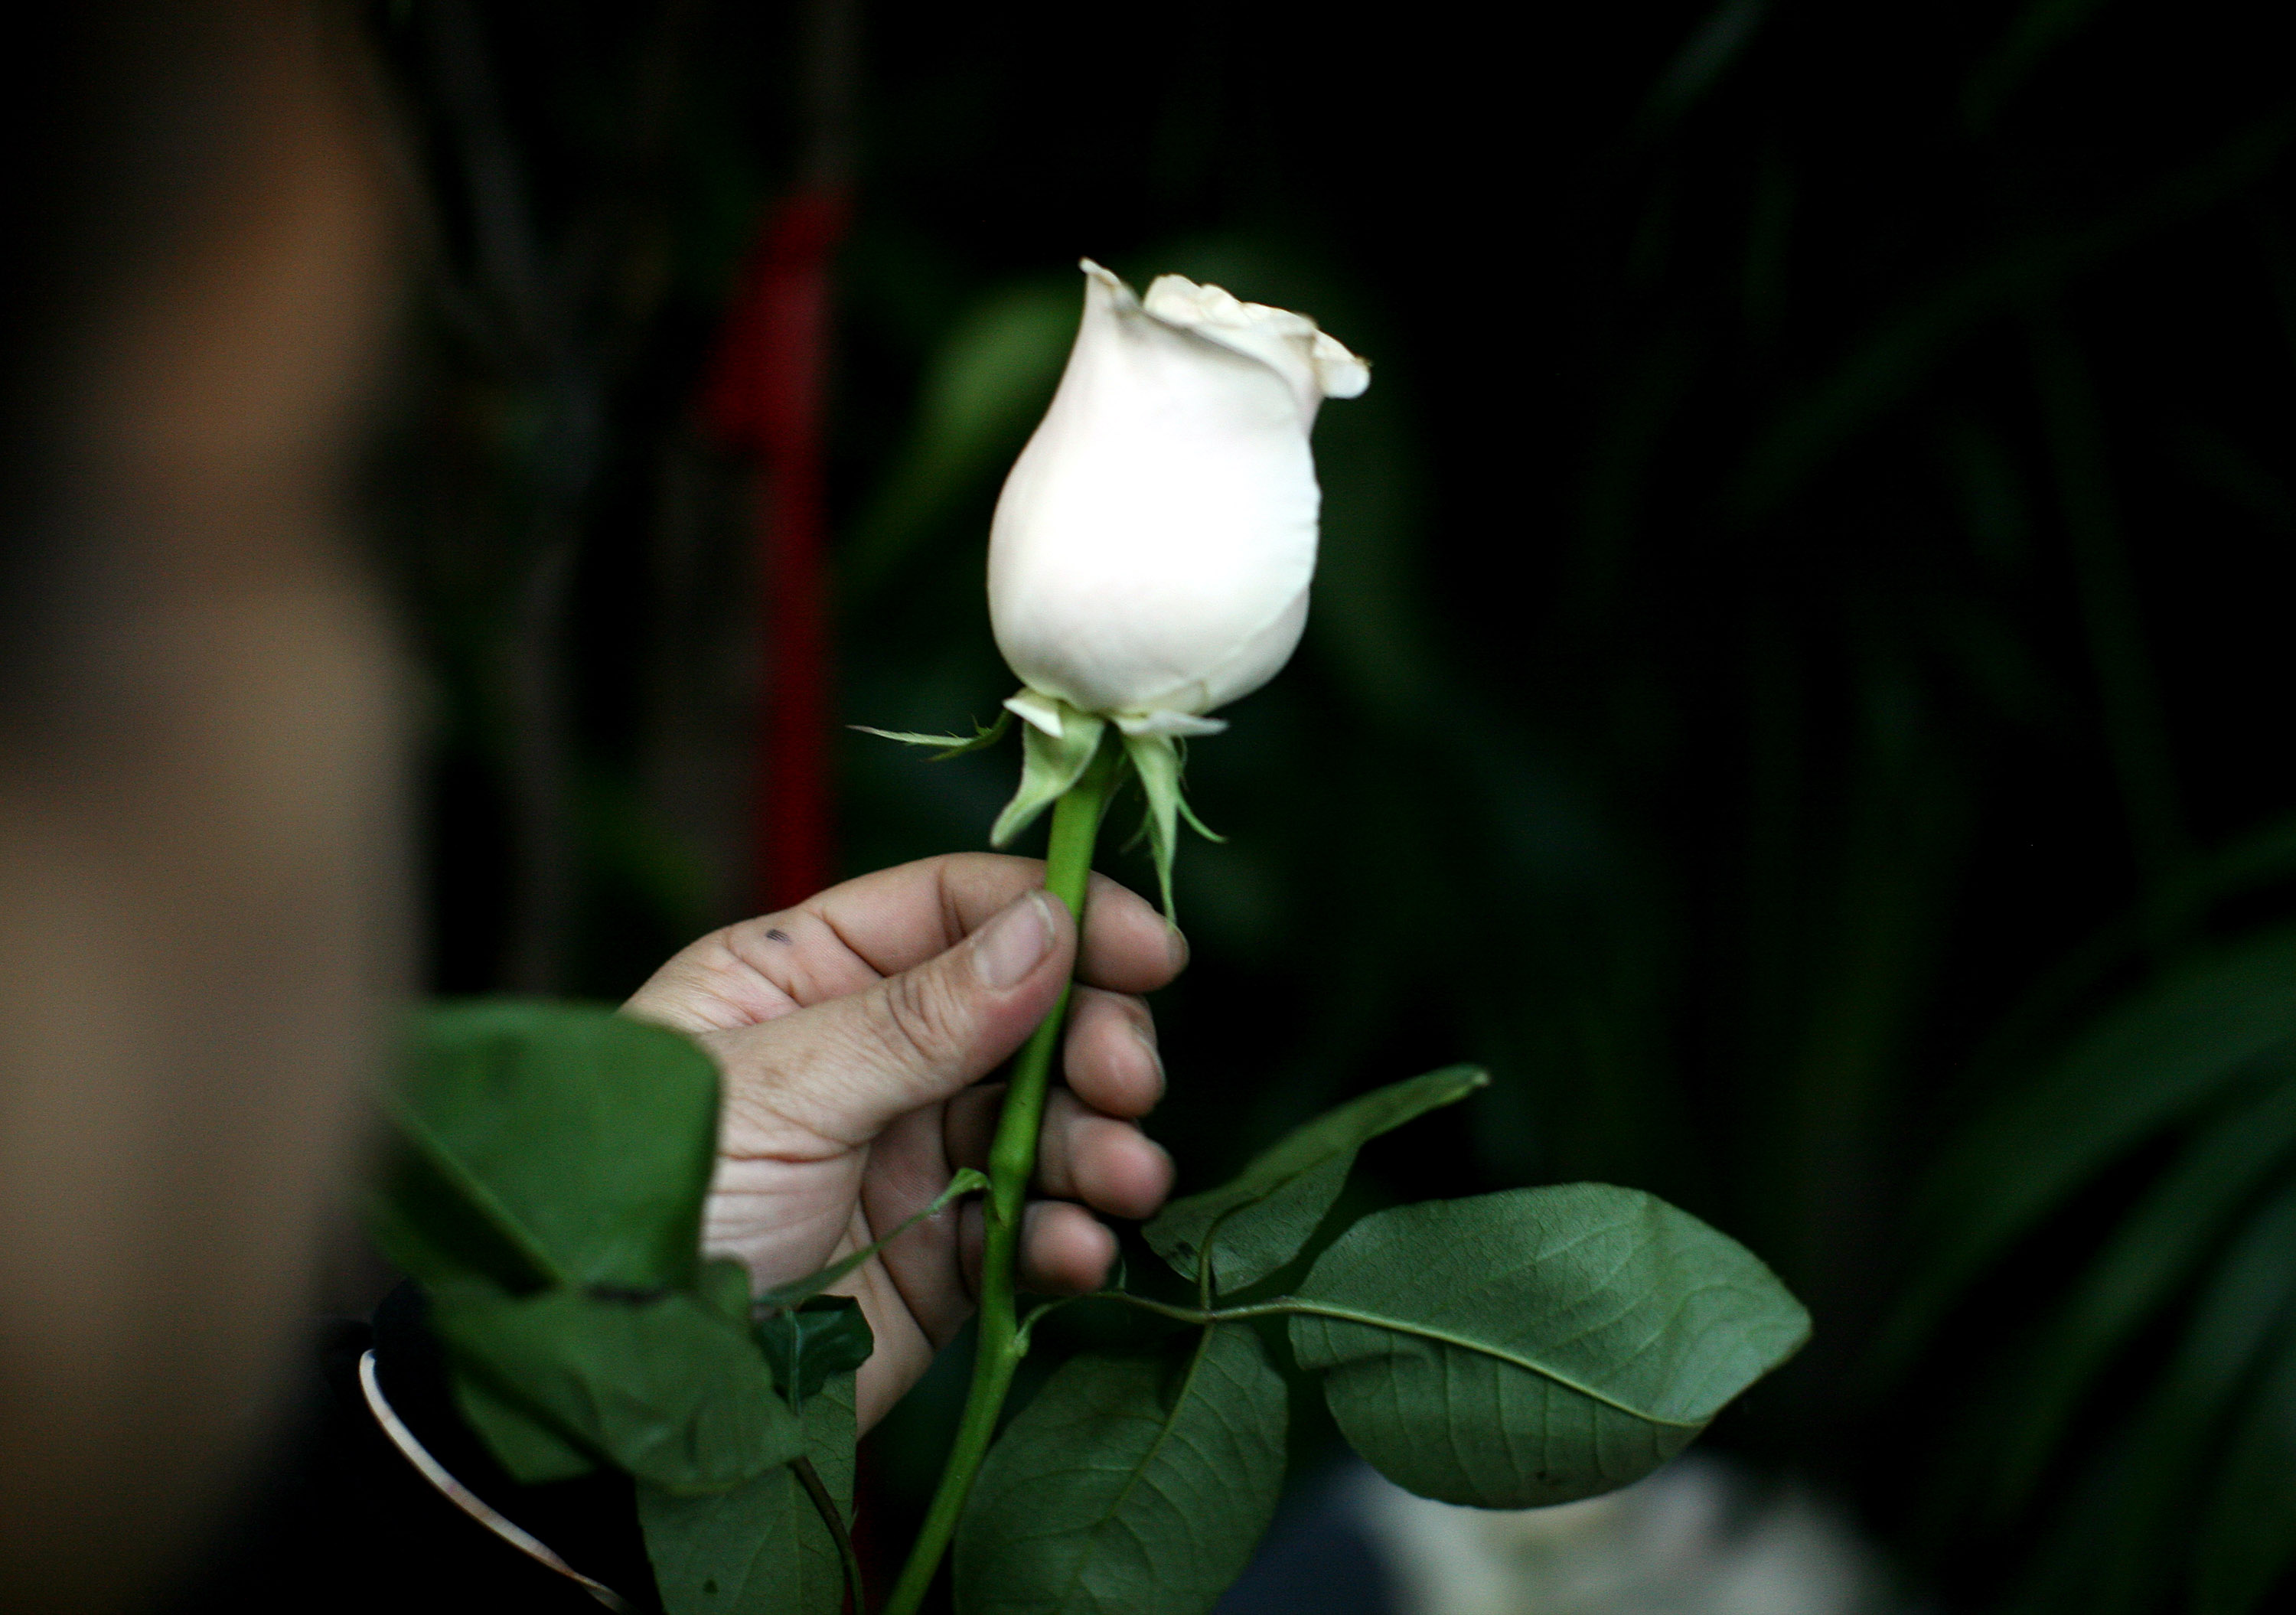 我留意到了拓印在帕面上的一朵白玫瑰，不仅仅是花瓣已见零落，色泽也褪了……